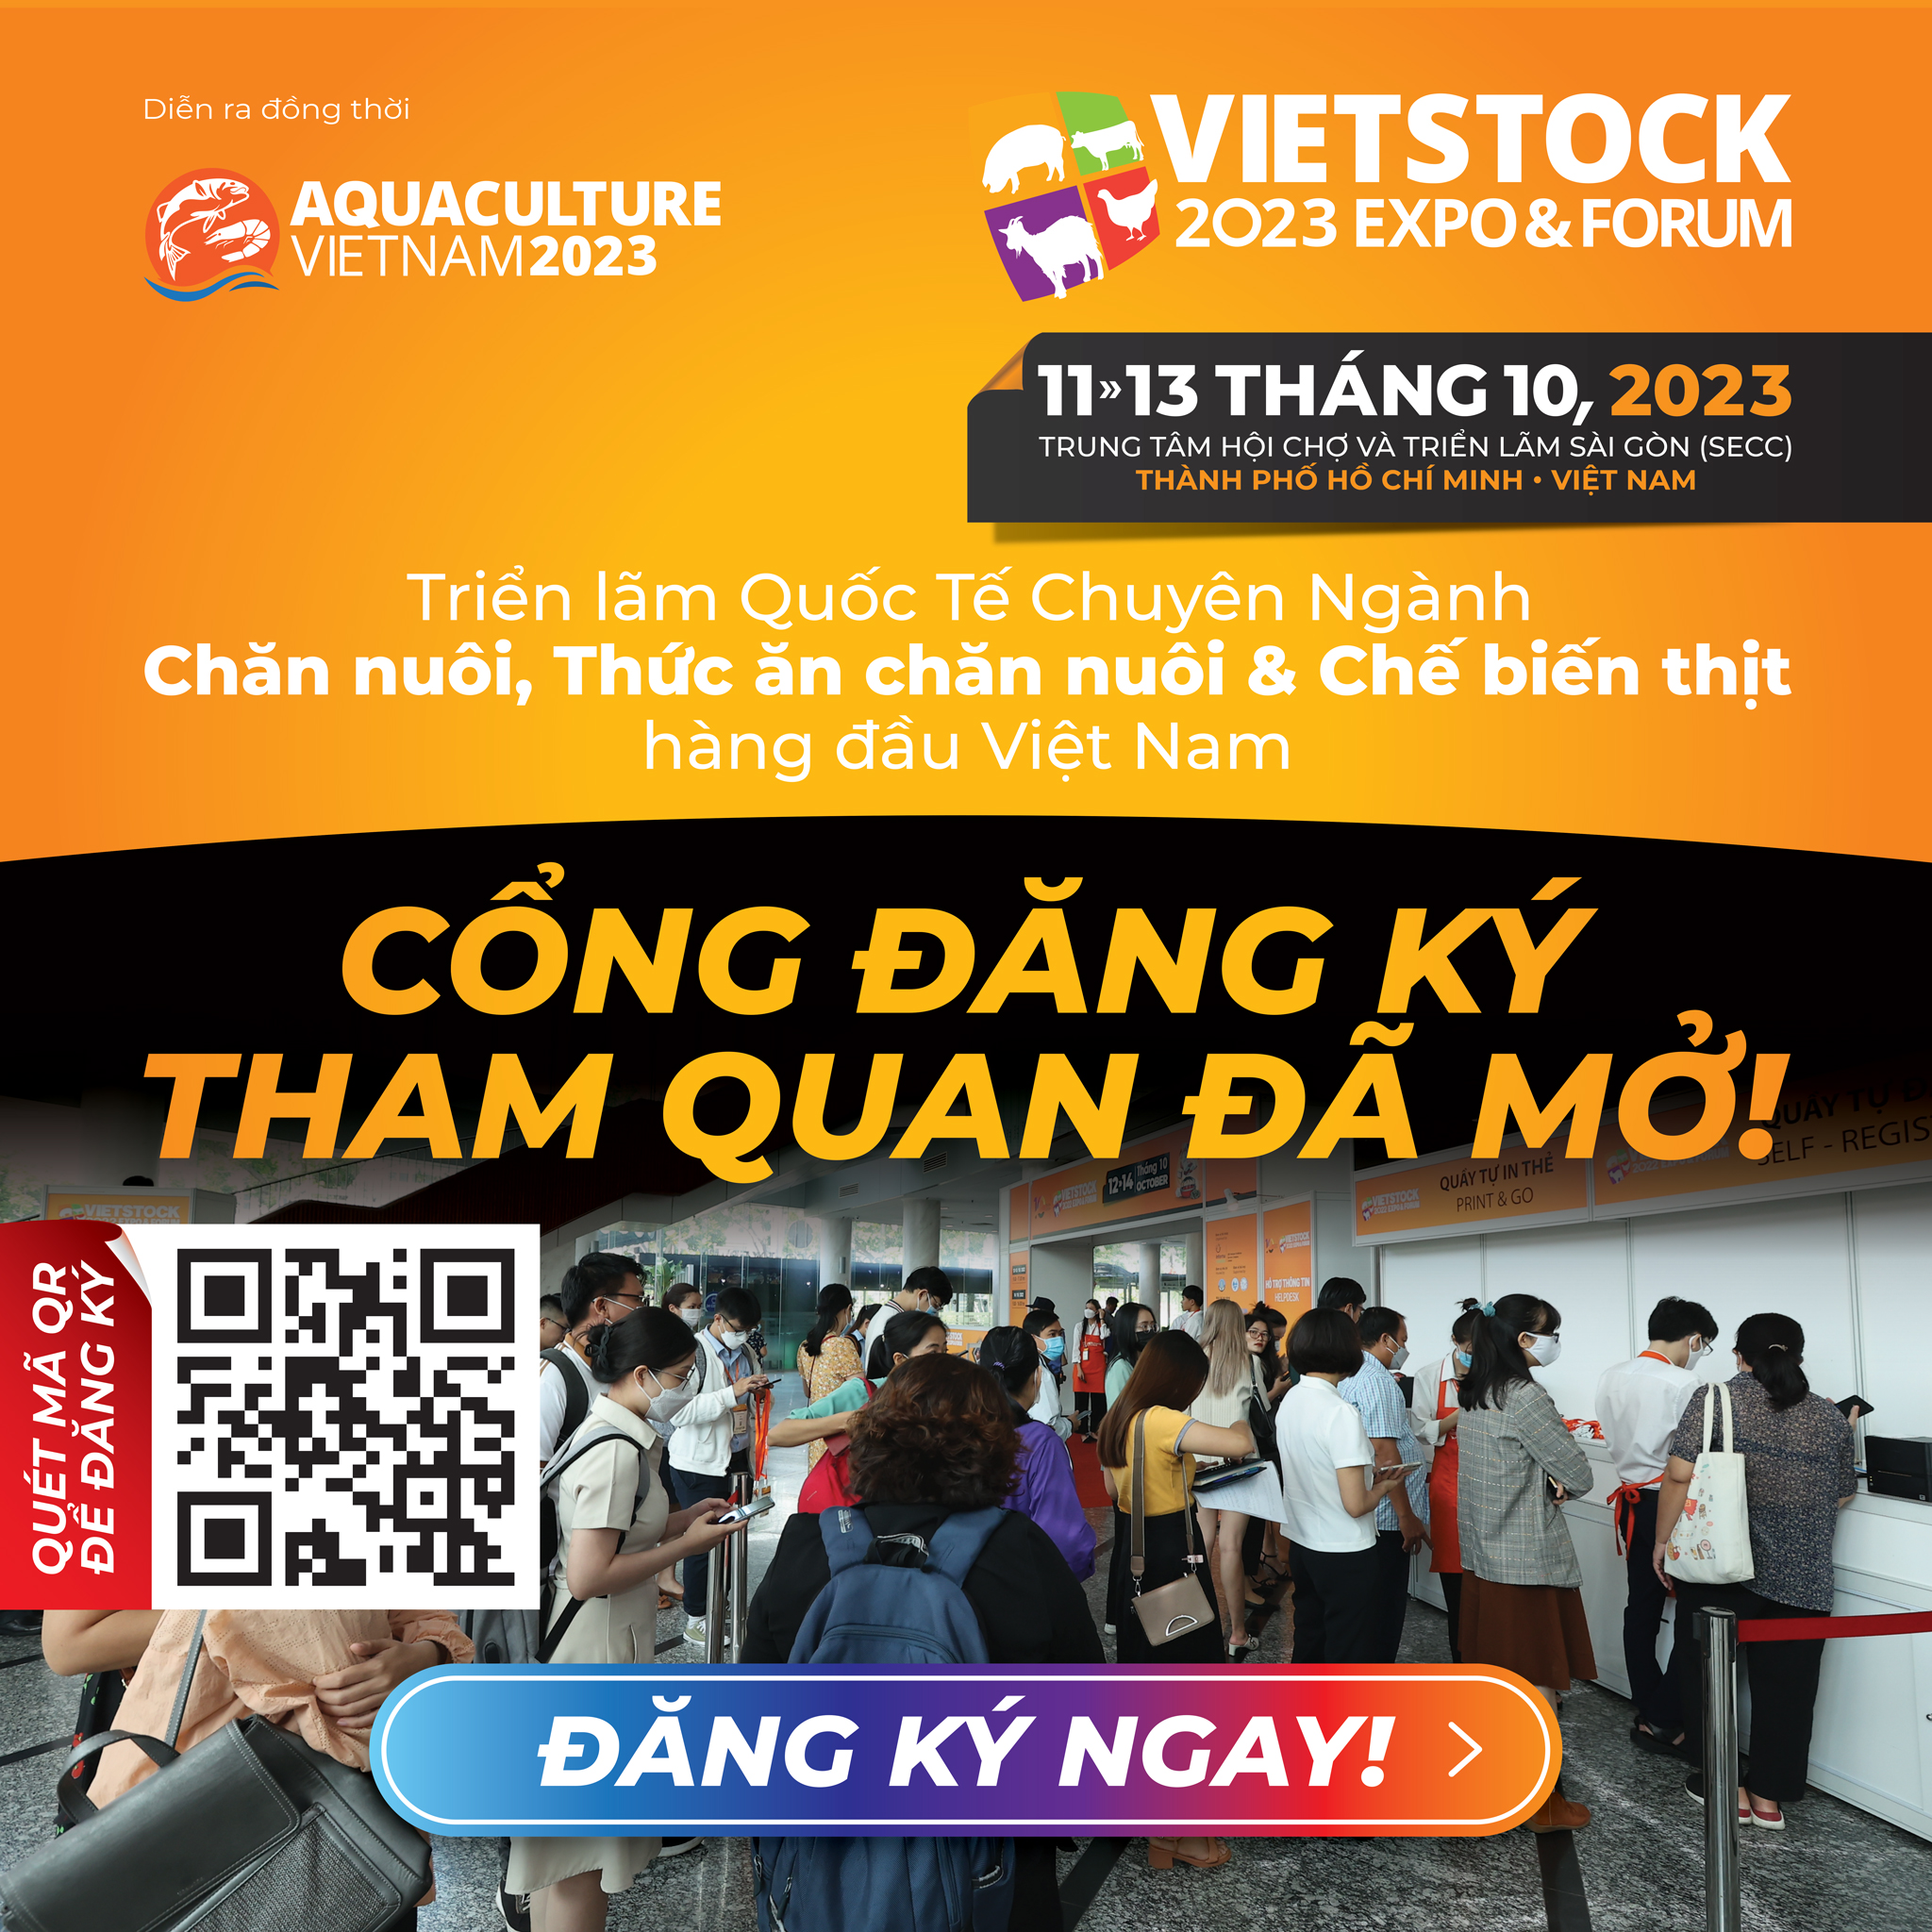 Vietstock 2023 là triển lãm chuyên ngành Chăn nuôi, Thức ăn Chăn nuôi, Thủy sản và Chế biến Thịt hàng đầu Việt Nam. Triển lãm chính thức mở công đăng ký tham quan vào ngày 18/05/2023.